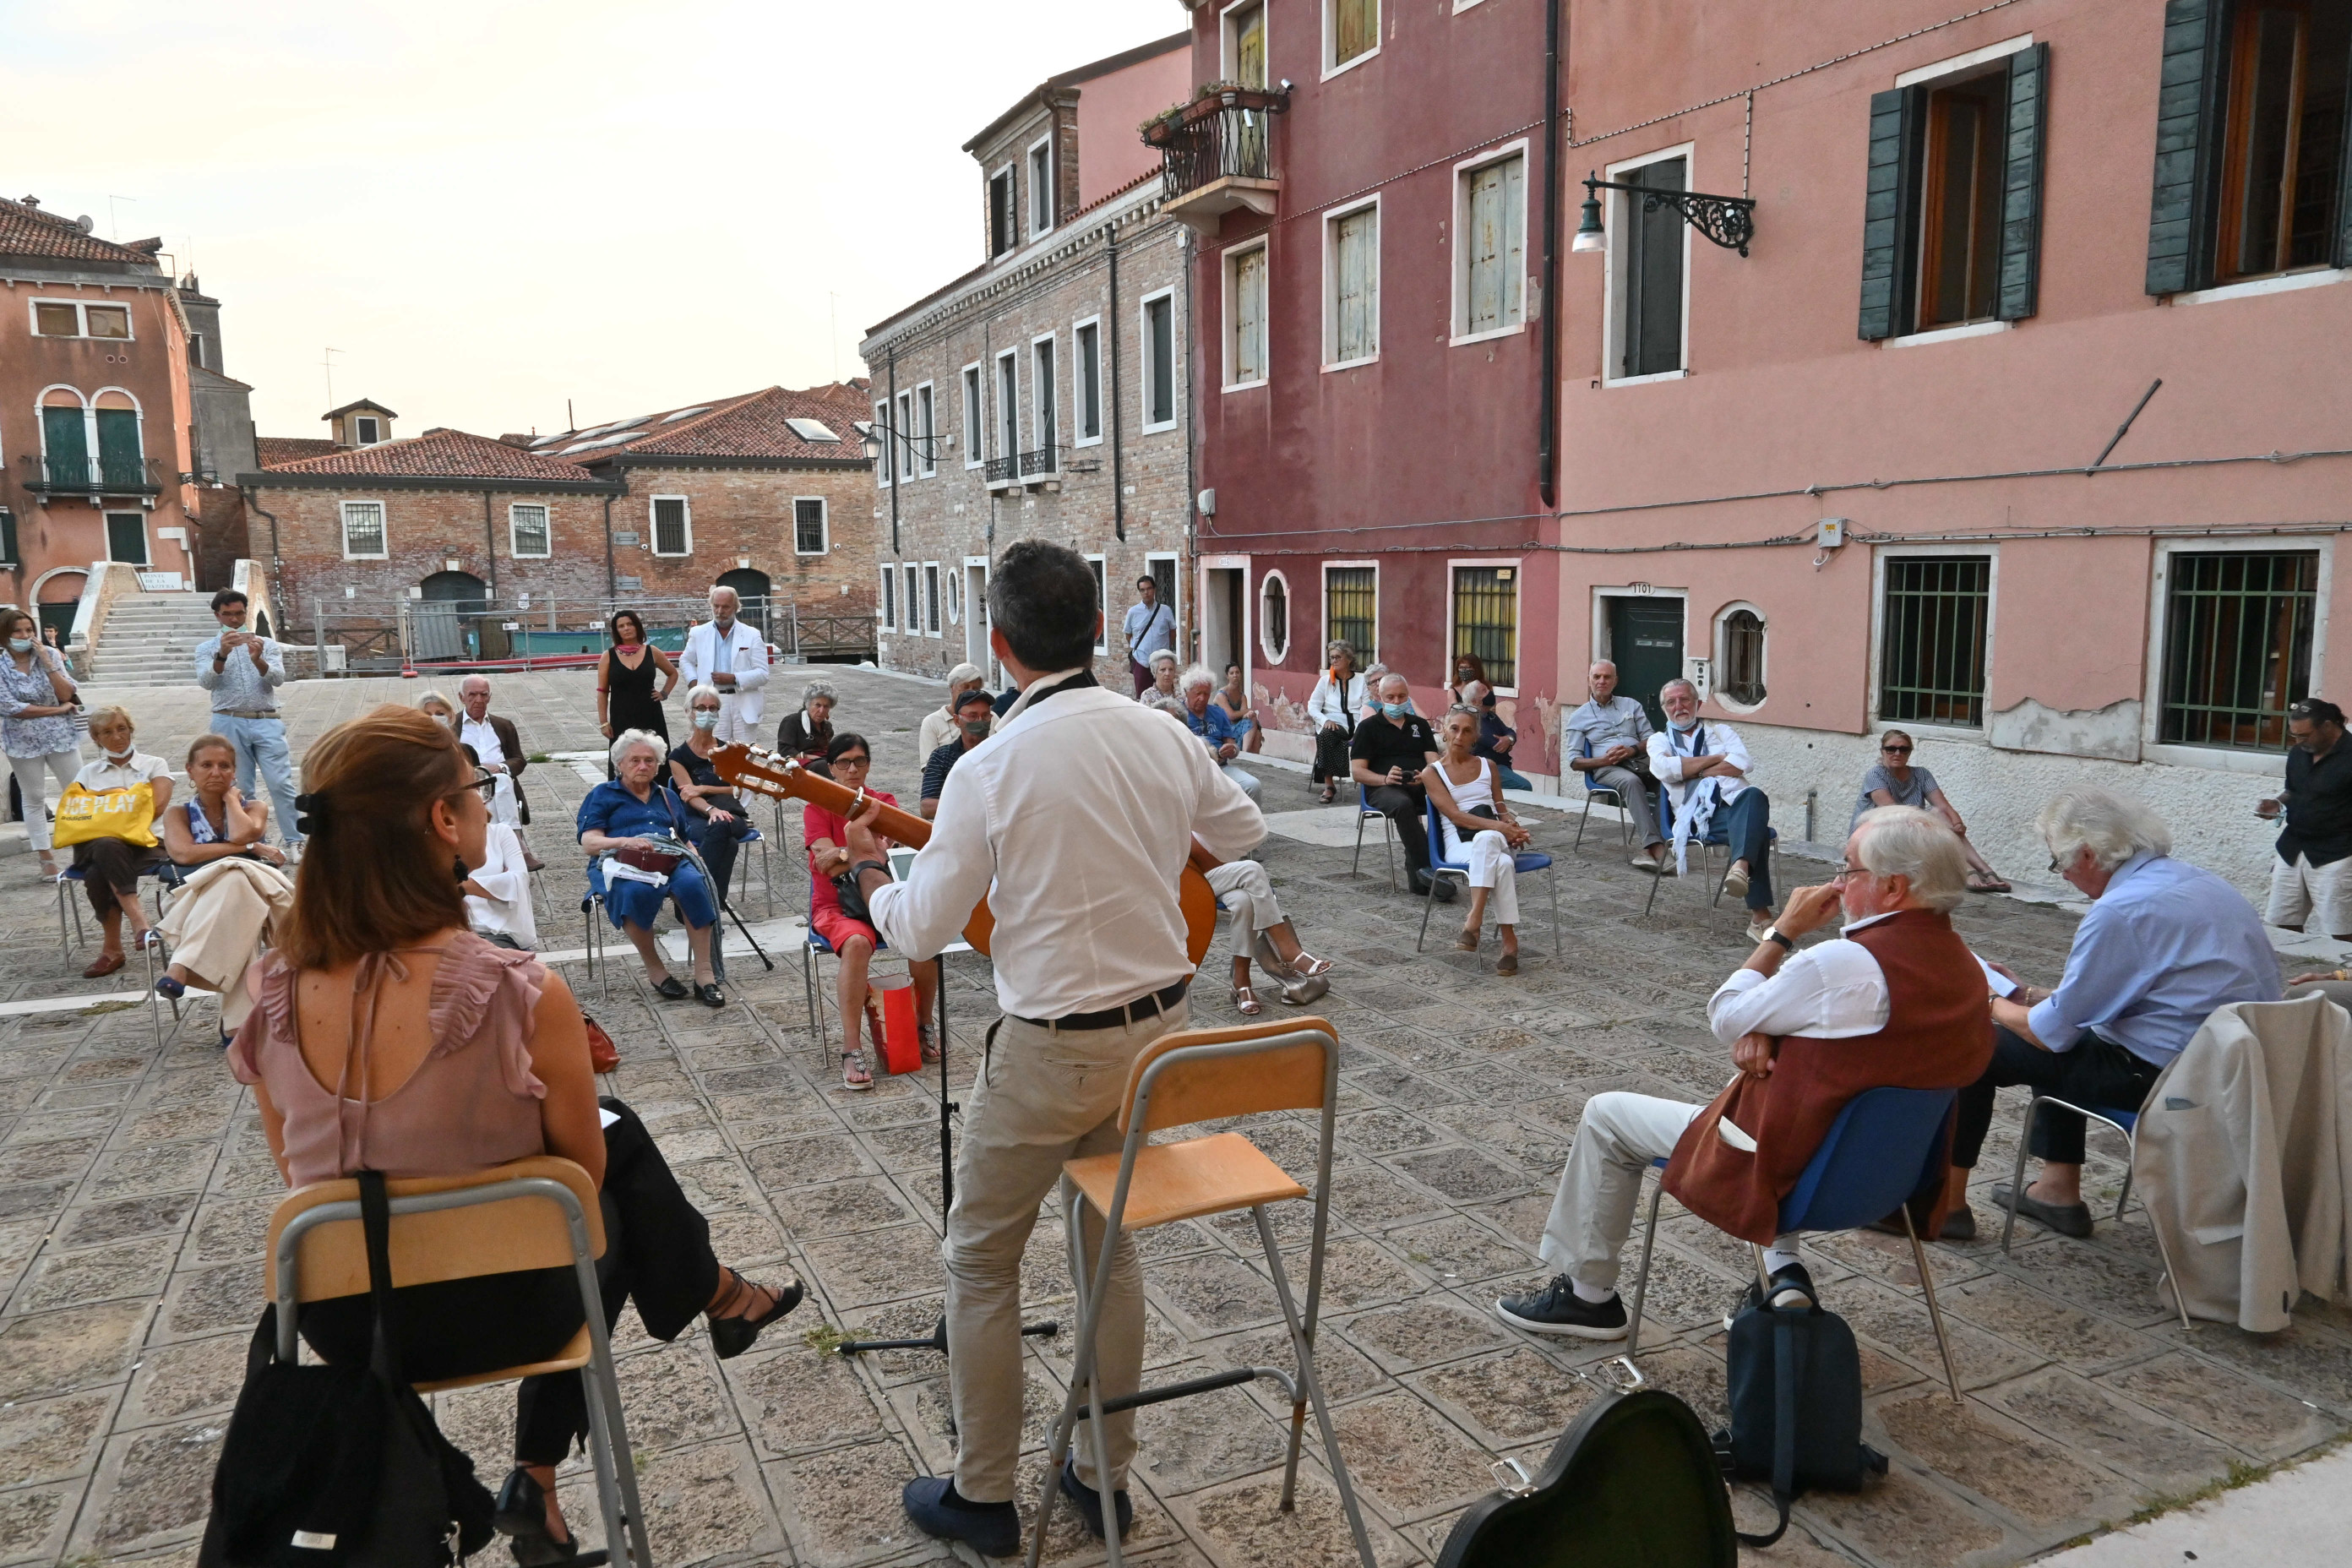 Presentazione di Venezia Capitale di Roberto Bianchin in Campo San Trovaso, martedì 15 settembre 2020 (foto Sebastiano Casellati).